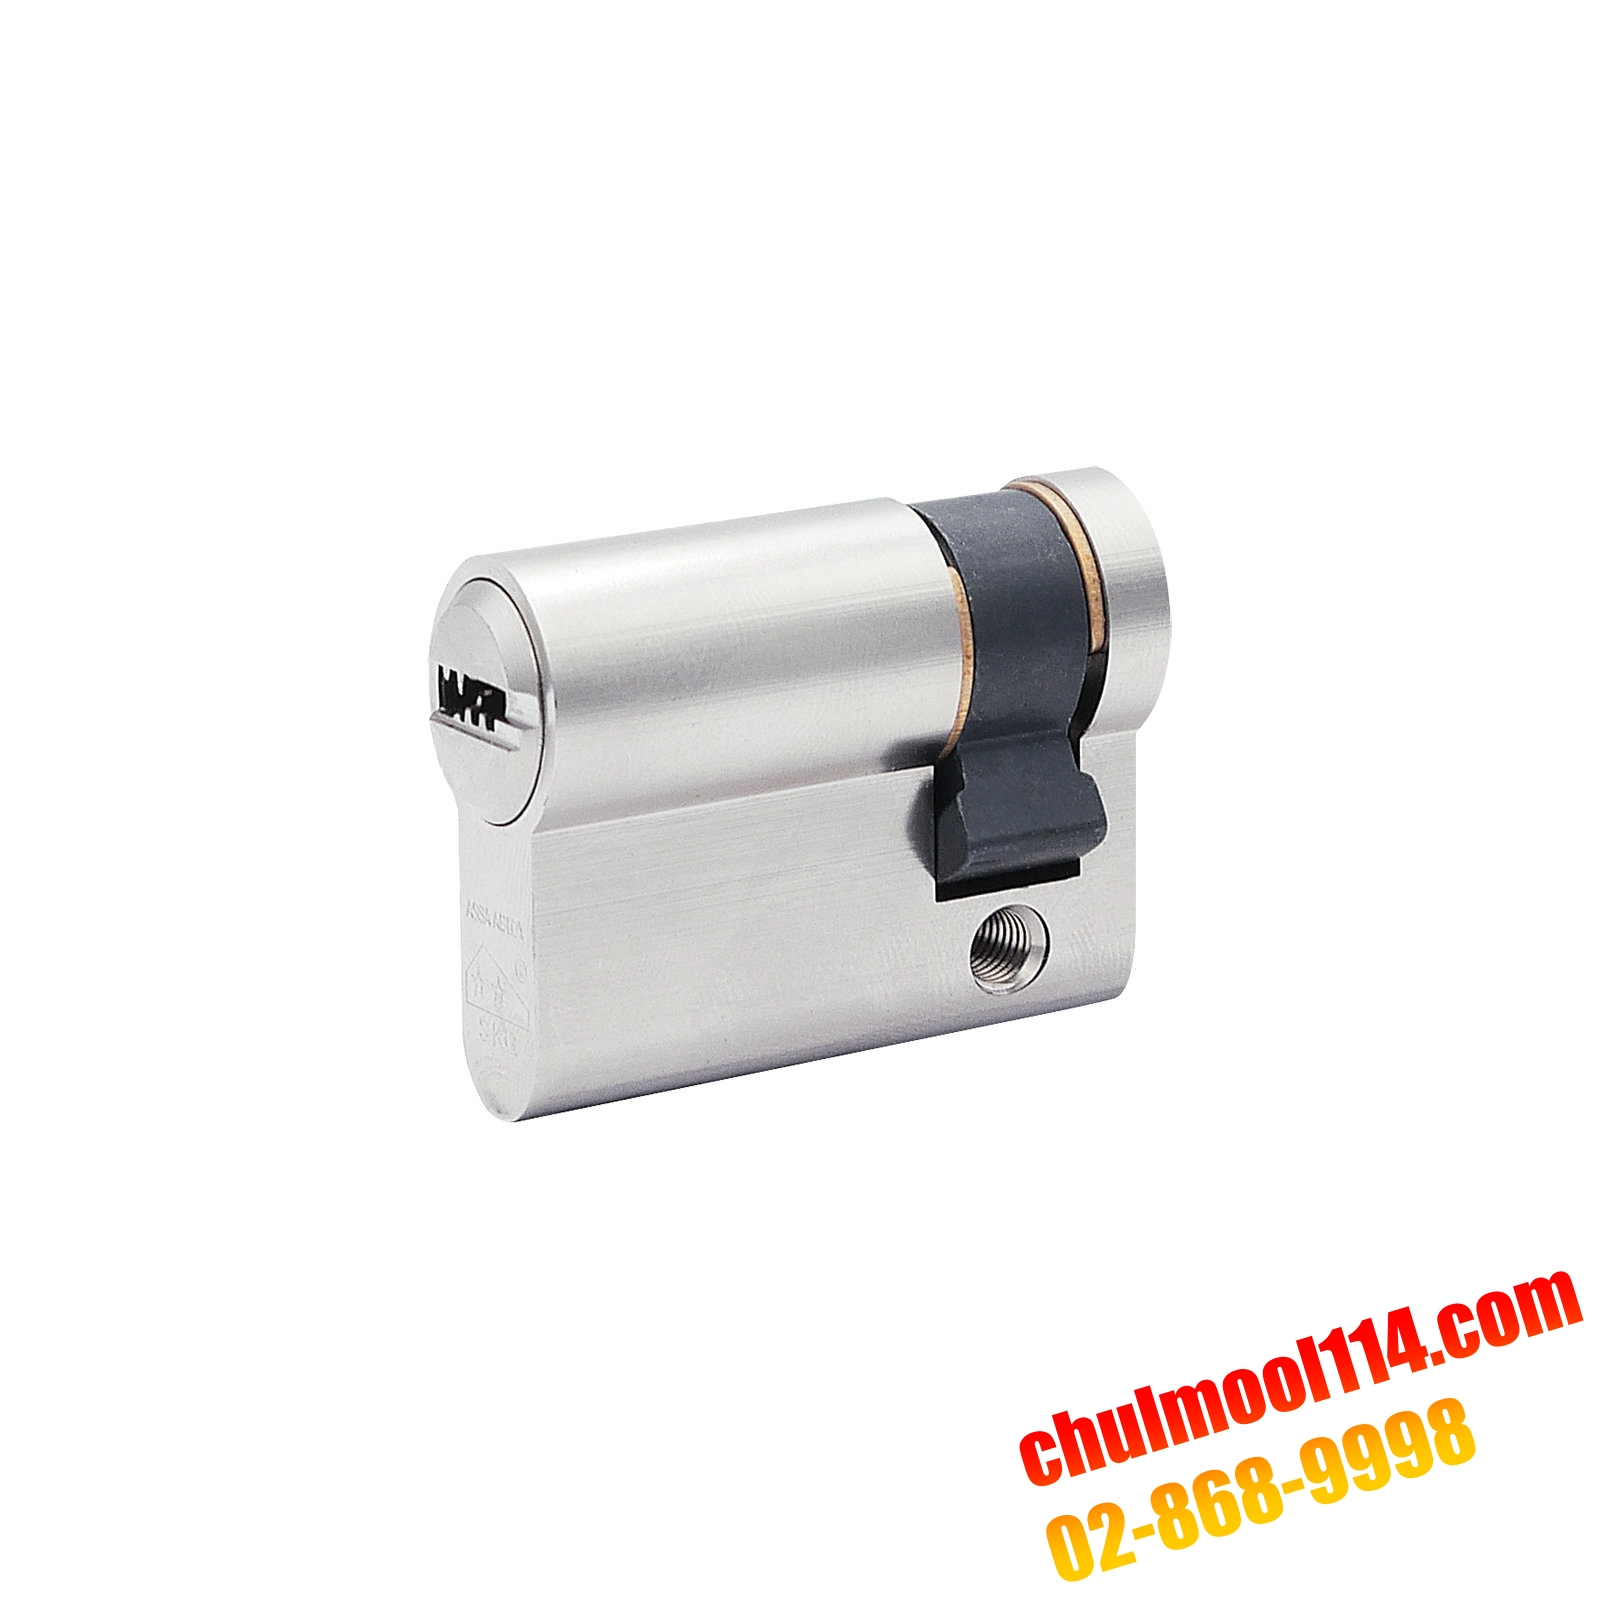 CY106 Sirio - Single Cylinder